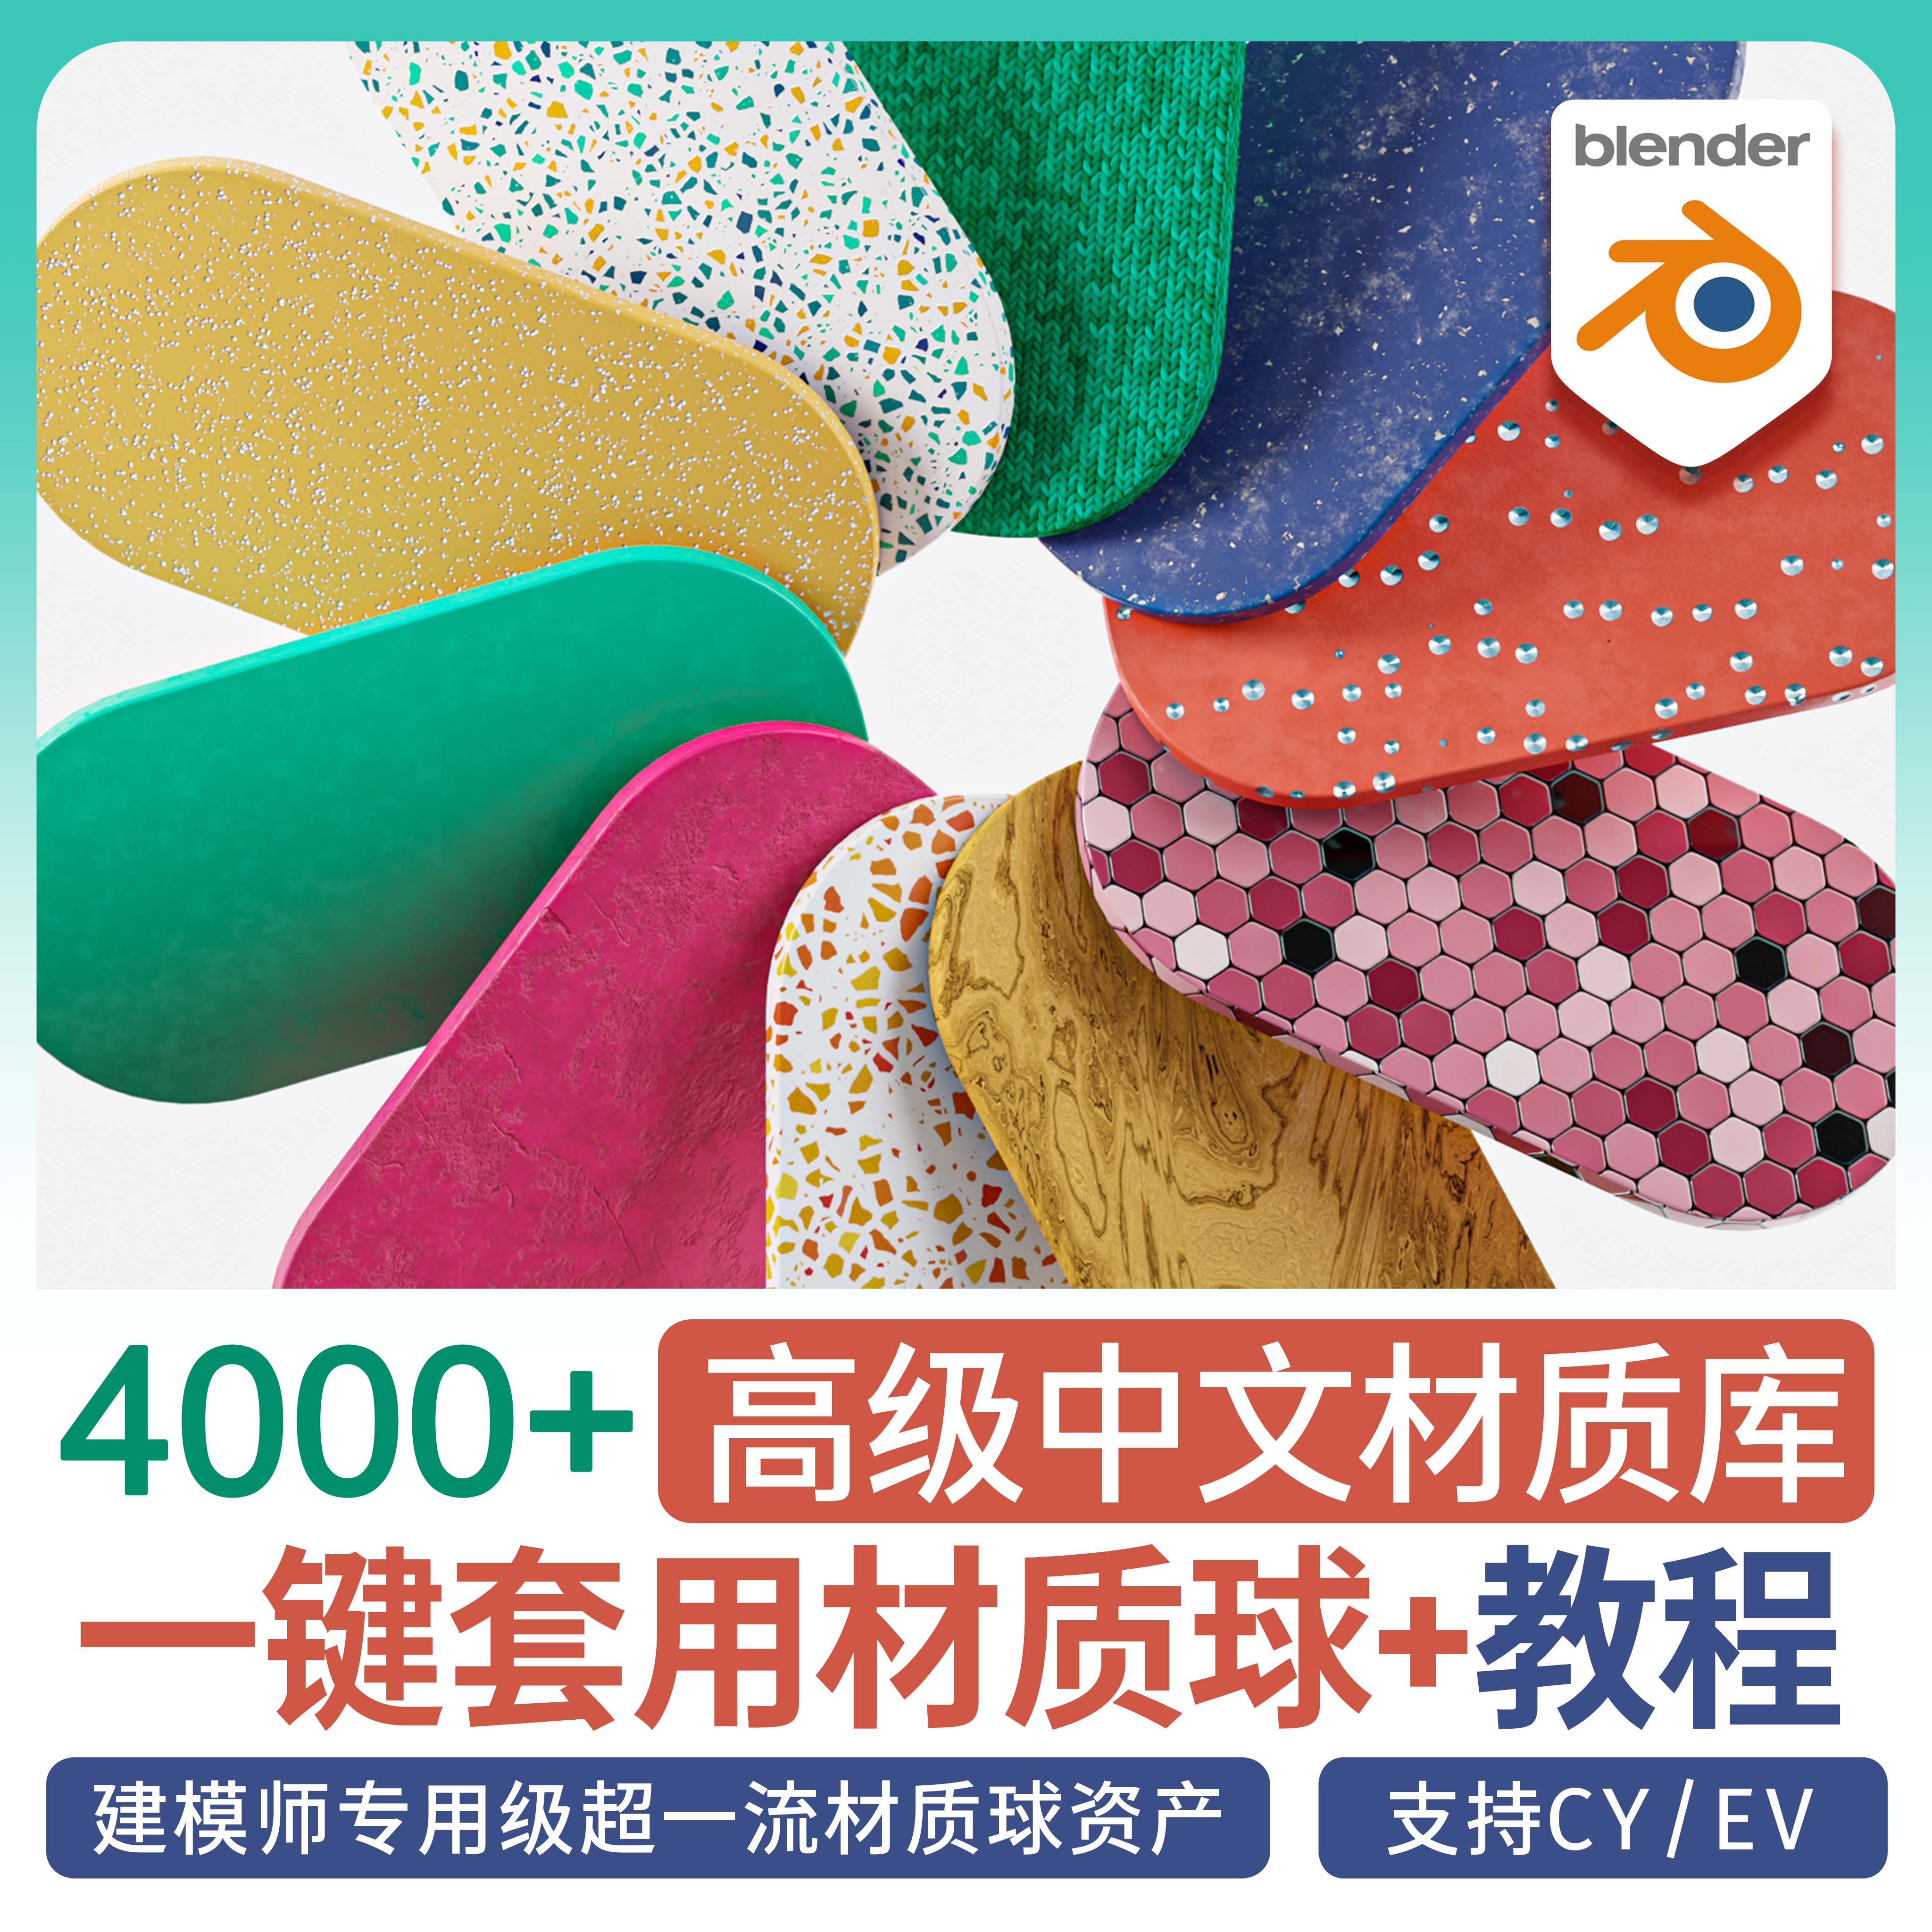 ⫷Blender中文材质库⫸  4000+材质球贴图插件玻璃布料卡通发光水